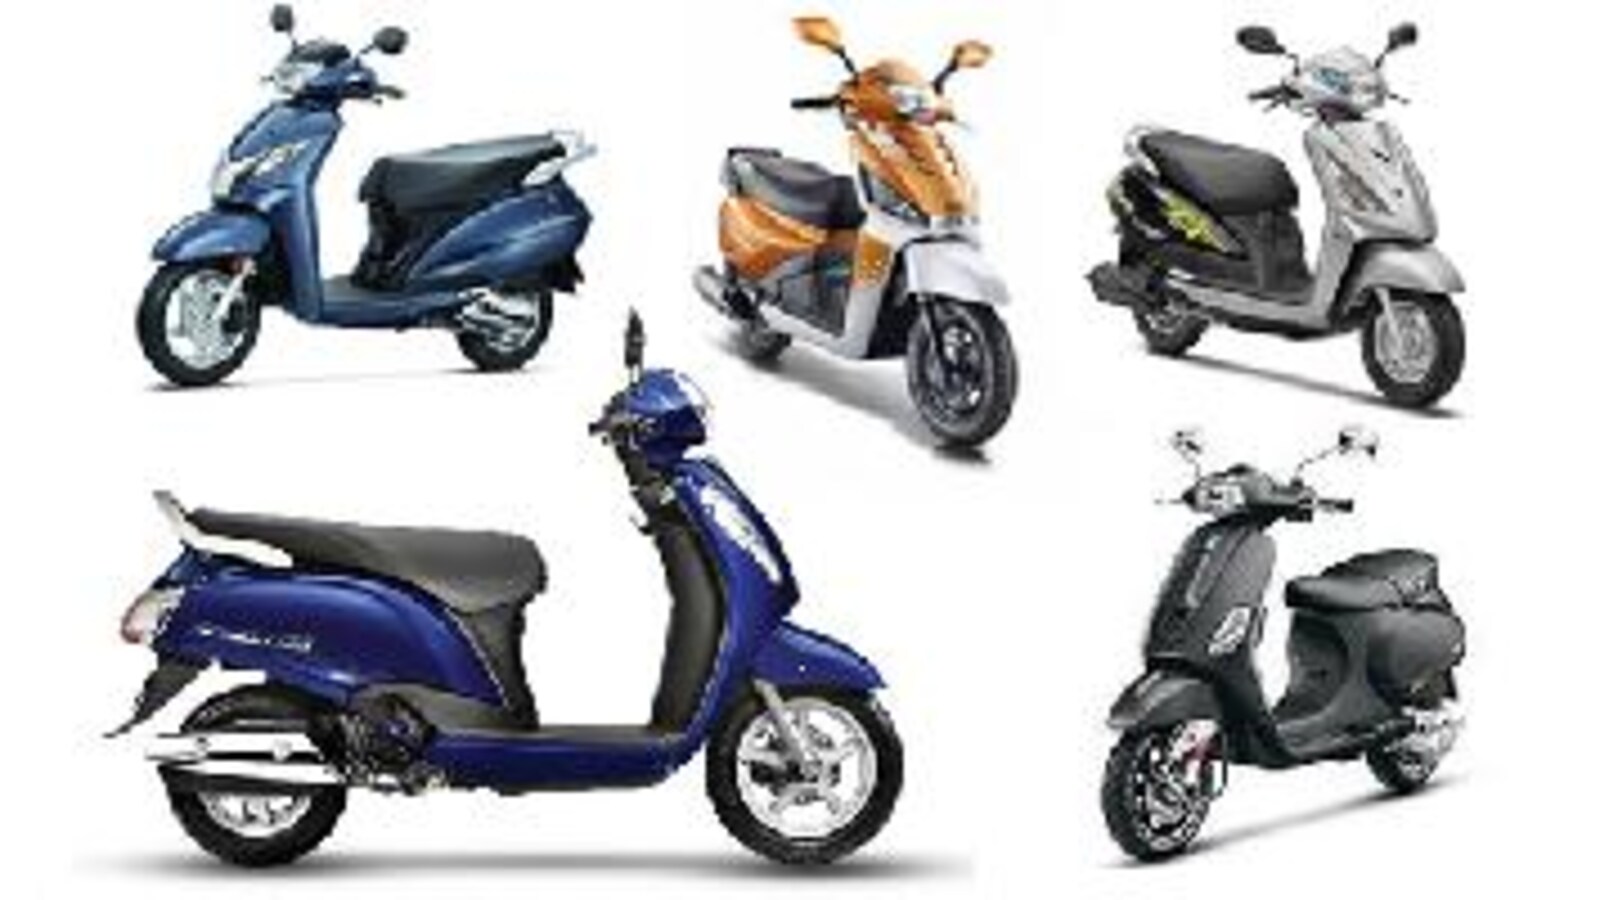 Honda Activa 125 vs Suzuki Access 125: Which 125 cc scooter should